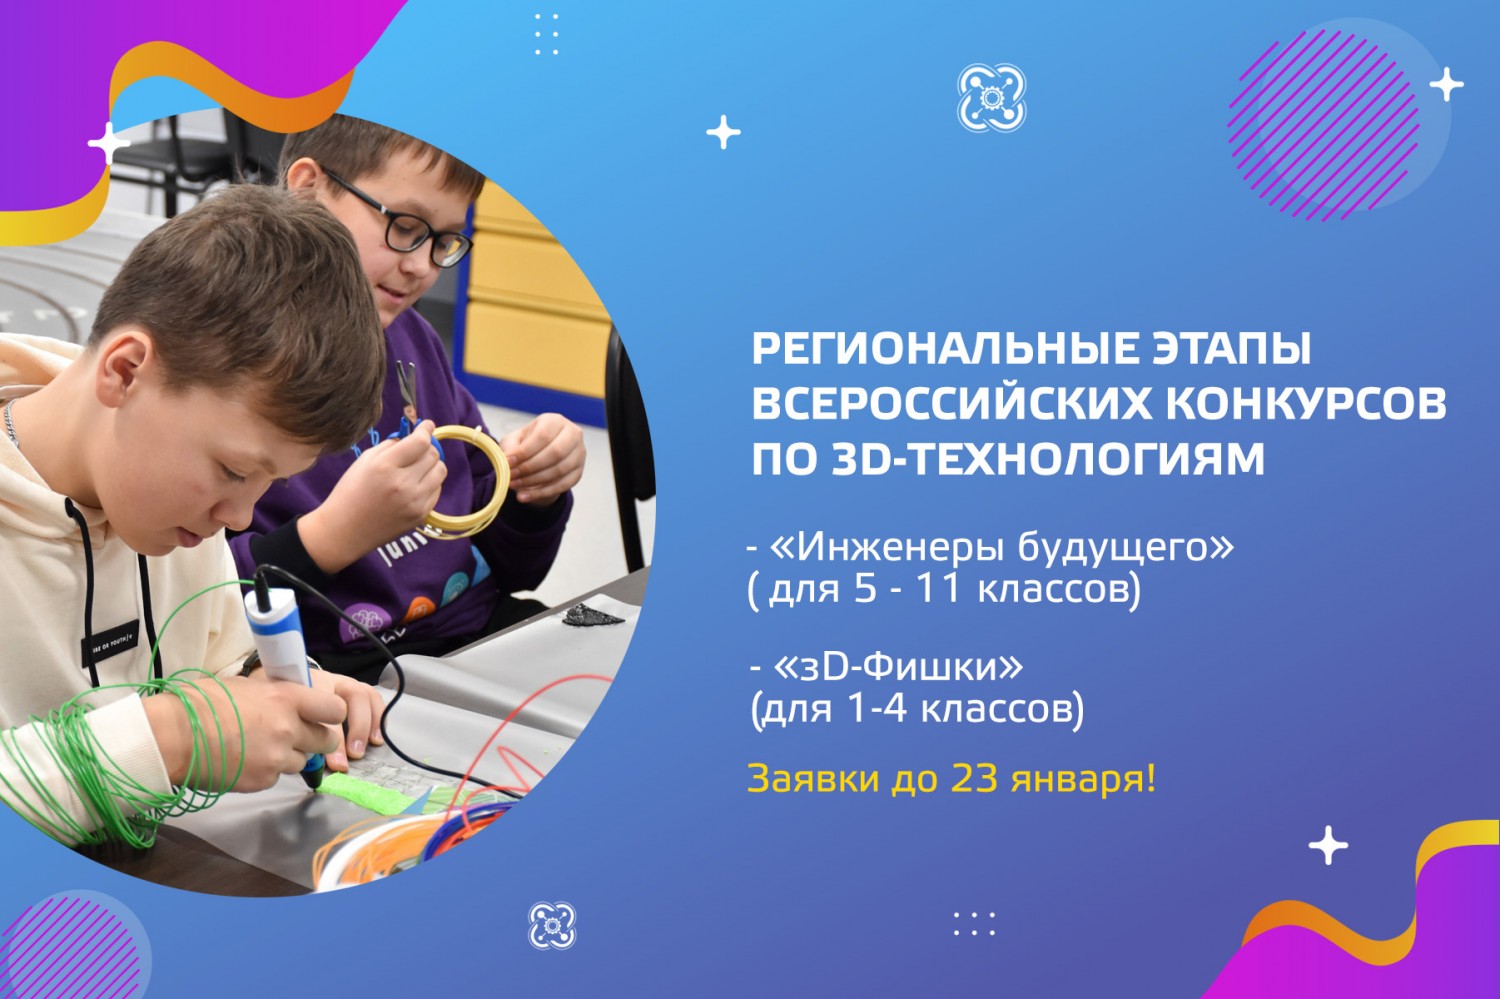 Приглашаем к участию в региональных этапах всероссийских конкурсов по 3D-технологиям